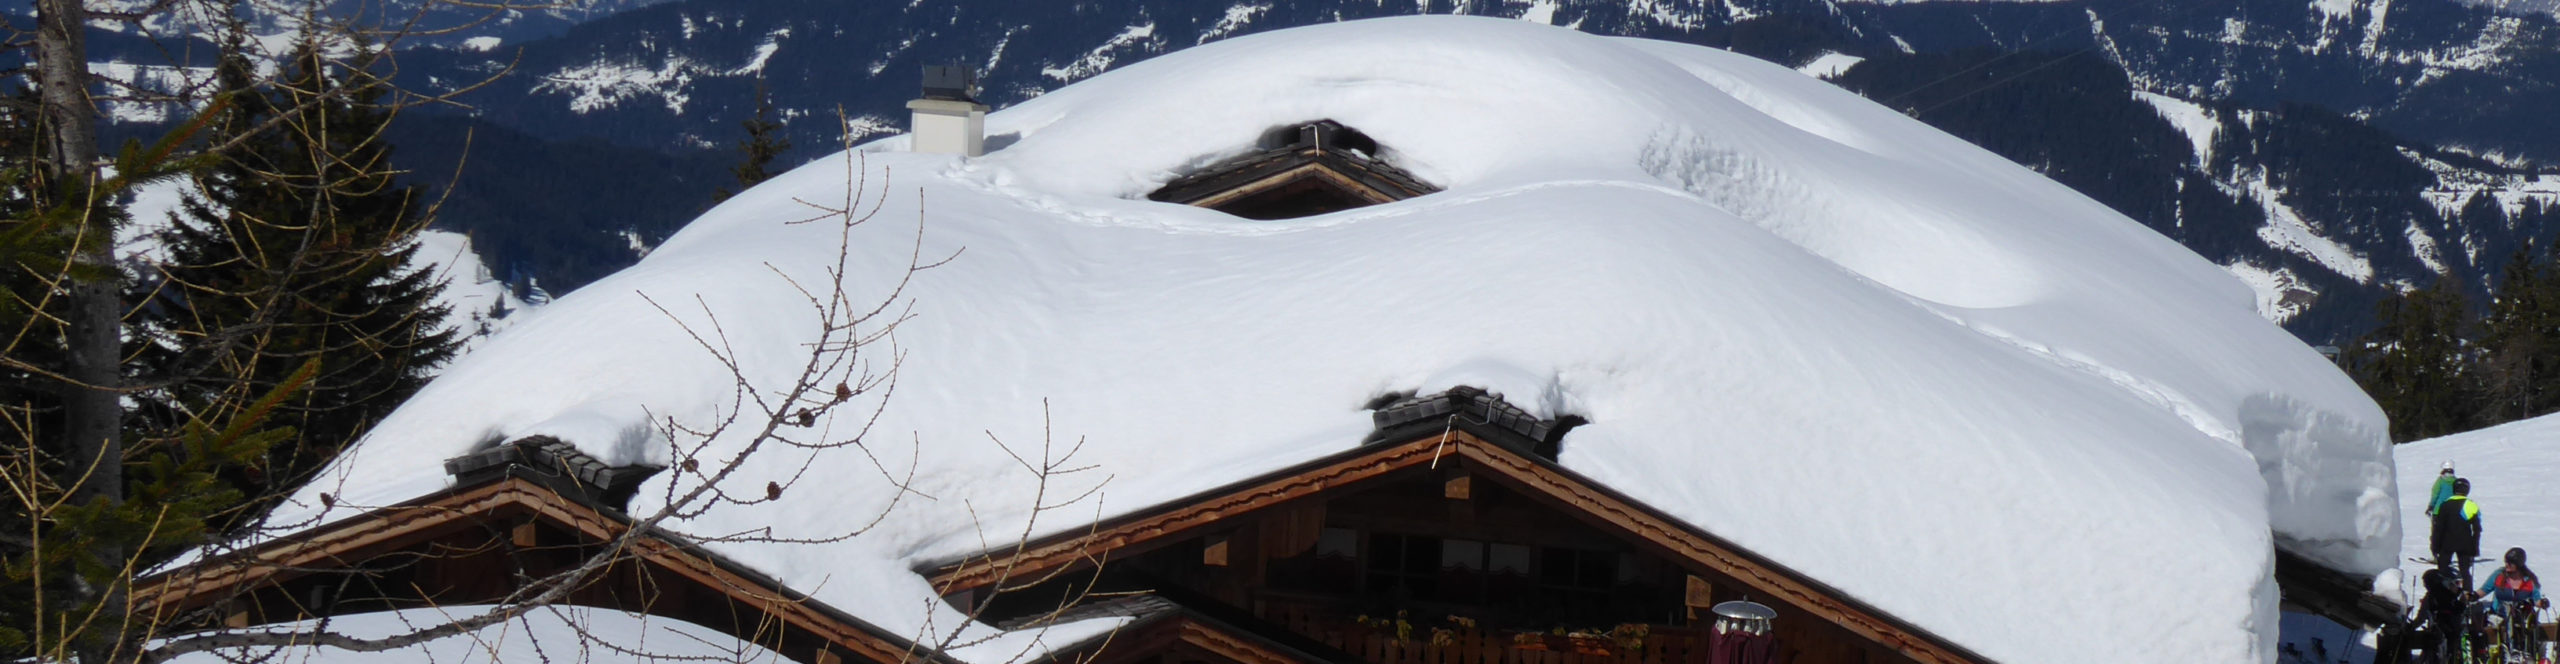 SKIWELT WILDER KAISER – SCHEFFAU – Skiwochenende in eines der größten Skigebiete Österreichs – auch ab Wiesentheid & Lichtenfels & Bramberg 